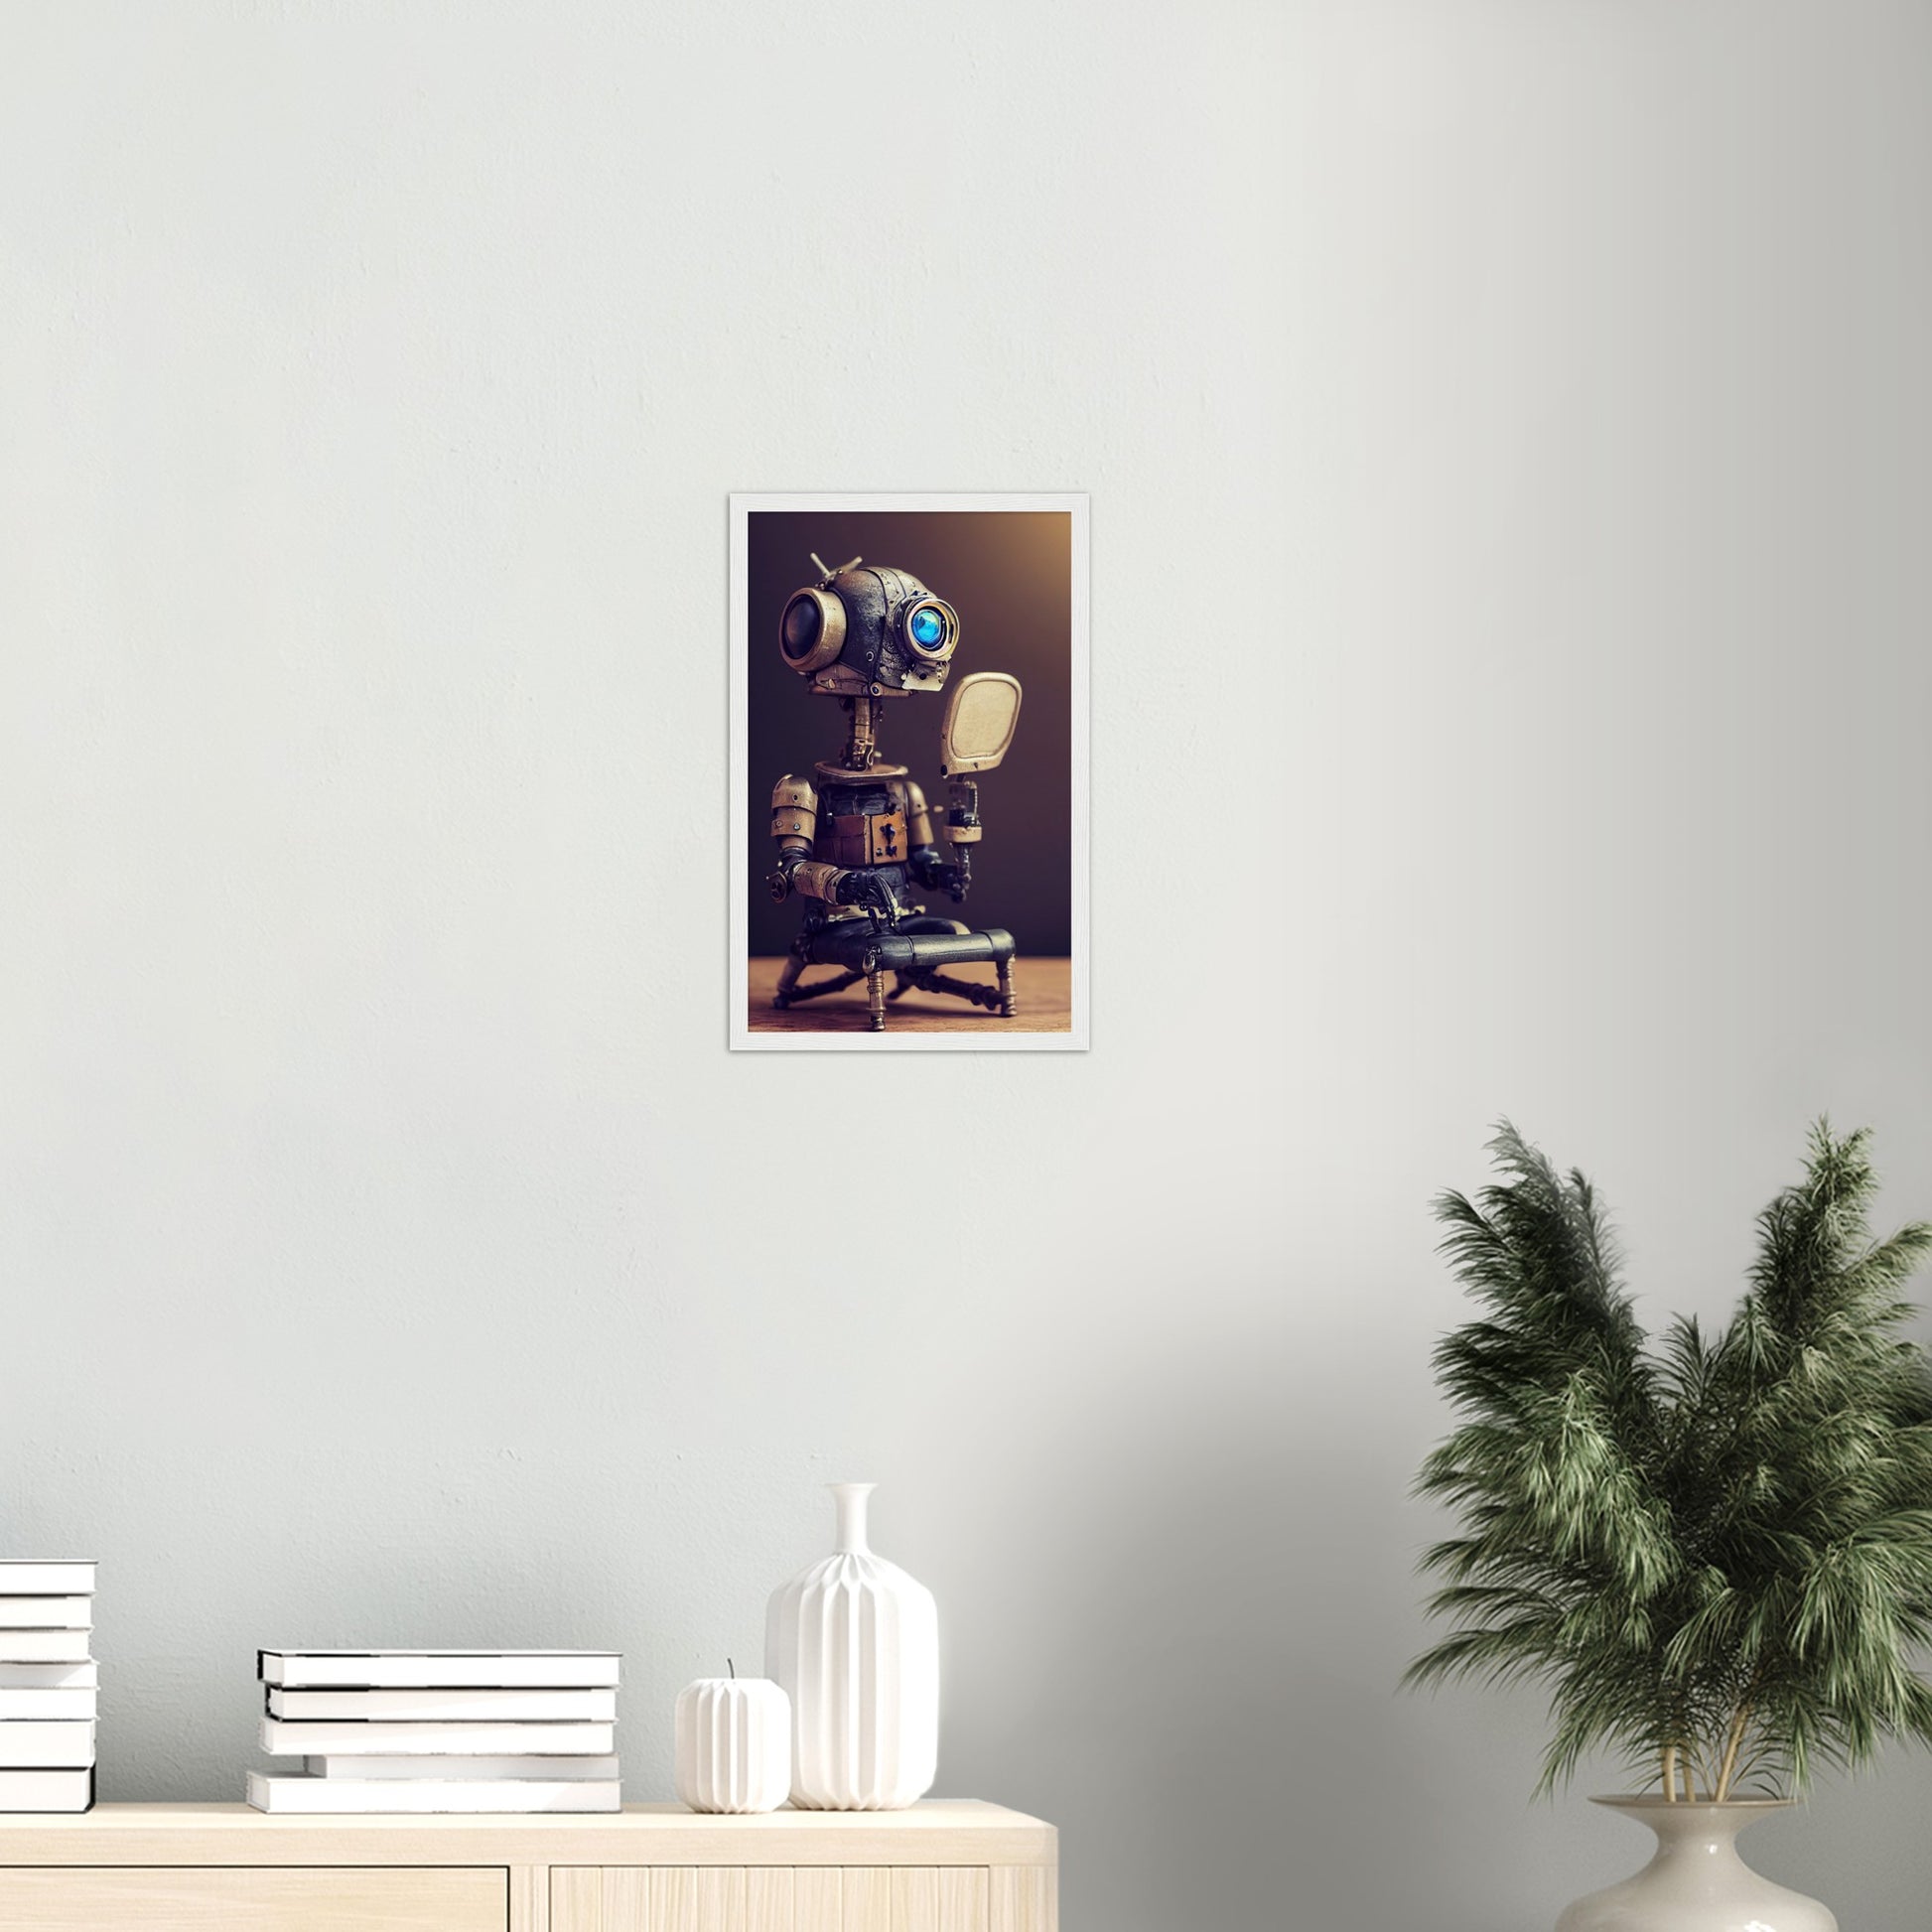 Poster mit Rahmen (Holz) in Museumsqualität - Tiny robot with a mirror - Hitoshi 人 - Wall Art - Spiegel - Acryldruck - Wandkunst - Customizable Coffee Cup - Personalized Gifts - Kunstdruck - Kleine Roboter - Acryldruck - Little Robots - Personalized Gifts - Tiny  - Steampunk - zukunft - Poster with frame - Kunstwerk - Office Poster - Poster mit Rahmen - Kaffee Tasse - Poster - Bedruckte Tassen - Kunst Marke - Art Brand - Kunstdrucke - Künstler: John Grayst & Pixelboys - emotional robots - Geschenkidee - 